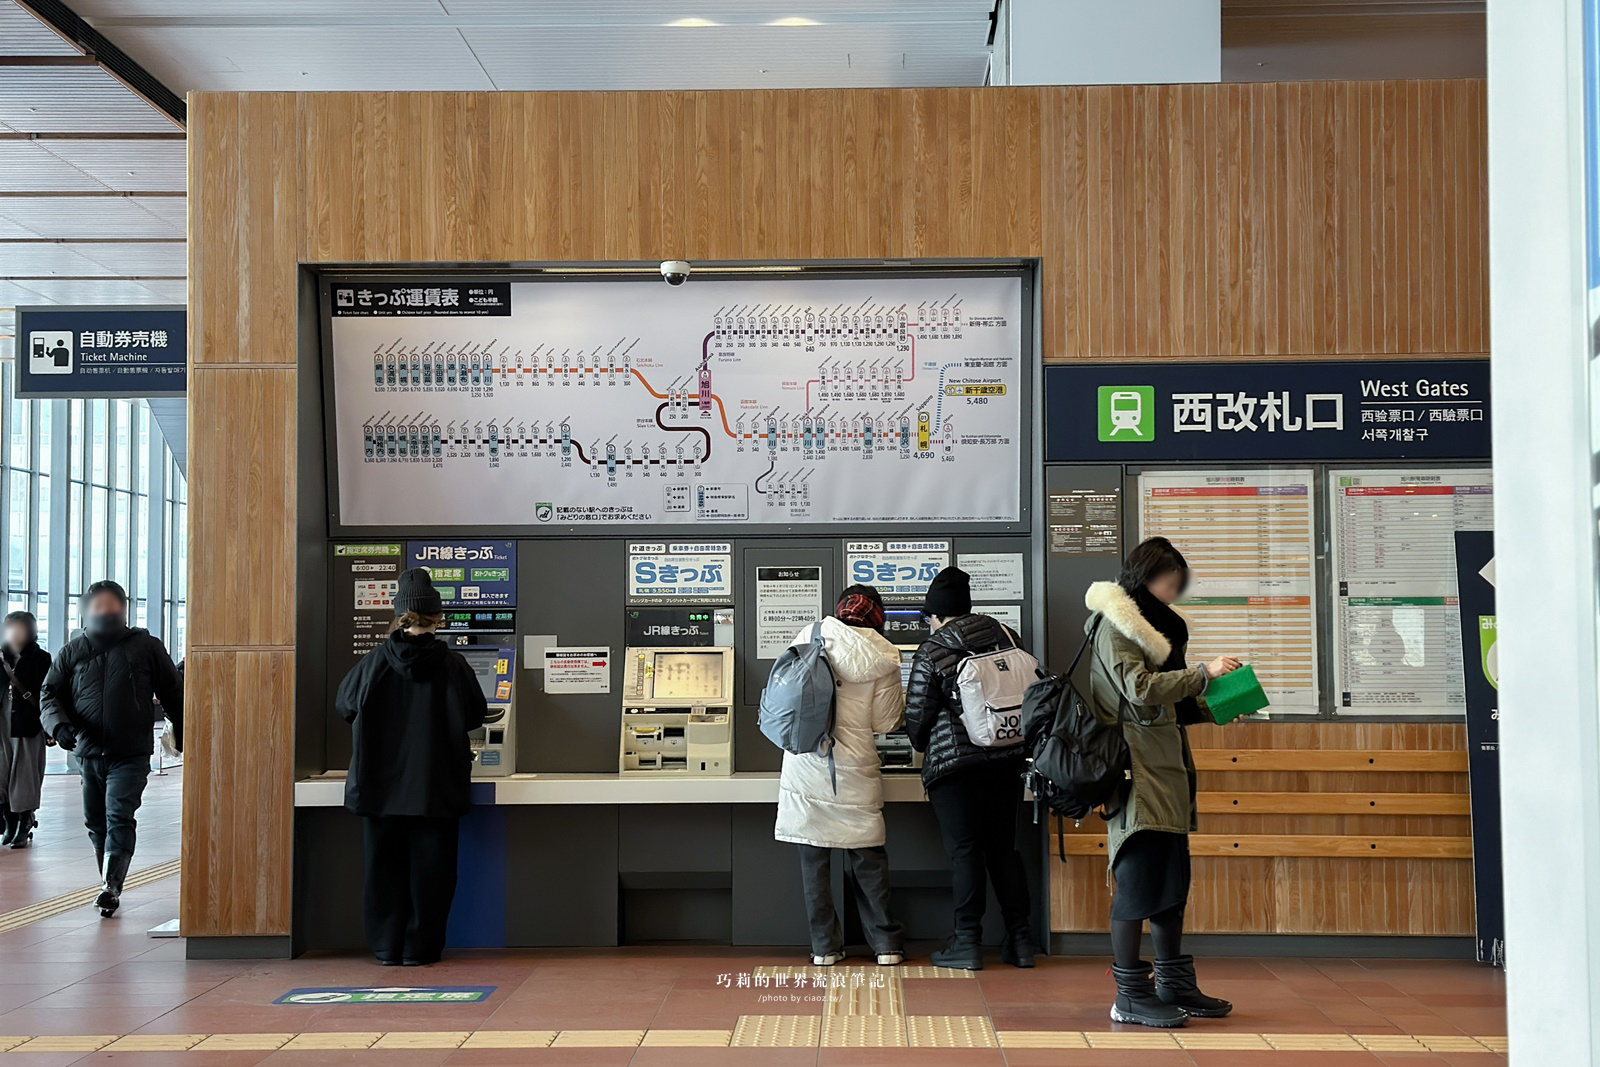 【北海道JR PASS攻略】北海道自由行不開車必買「JR北海道鐵路周遊券」如何領取、預約指定席、路線圖 @巧莉的世界流浪筆記